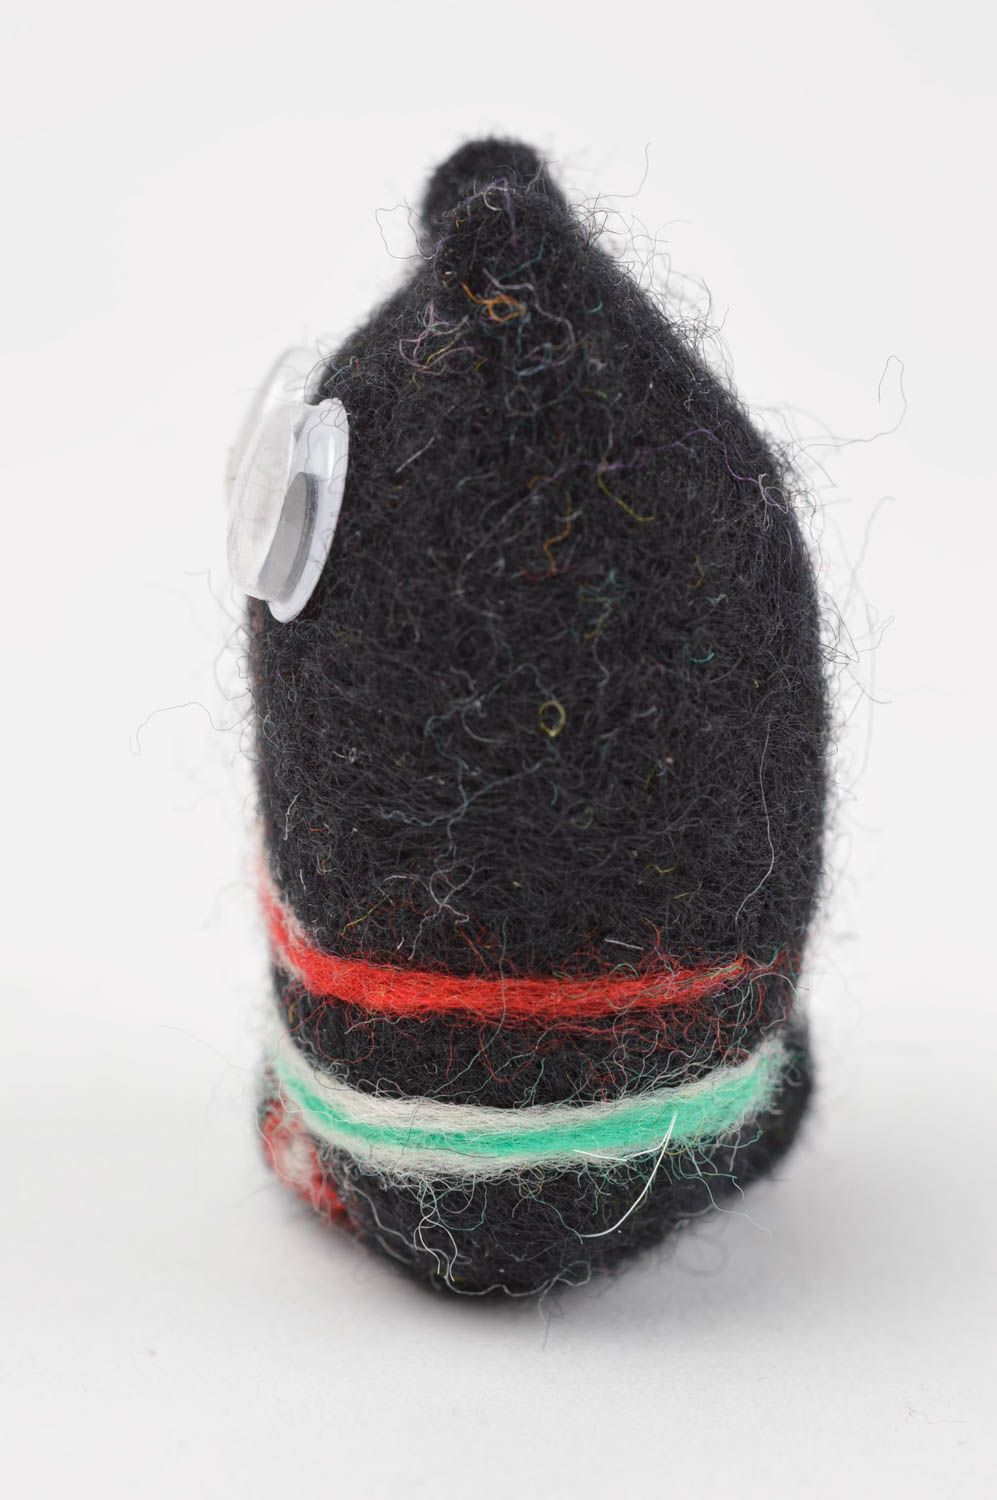 Игрушка ручной работы игрушка из валяной шерсти игрушка котик черный с полосами фото 3